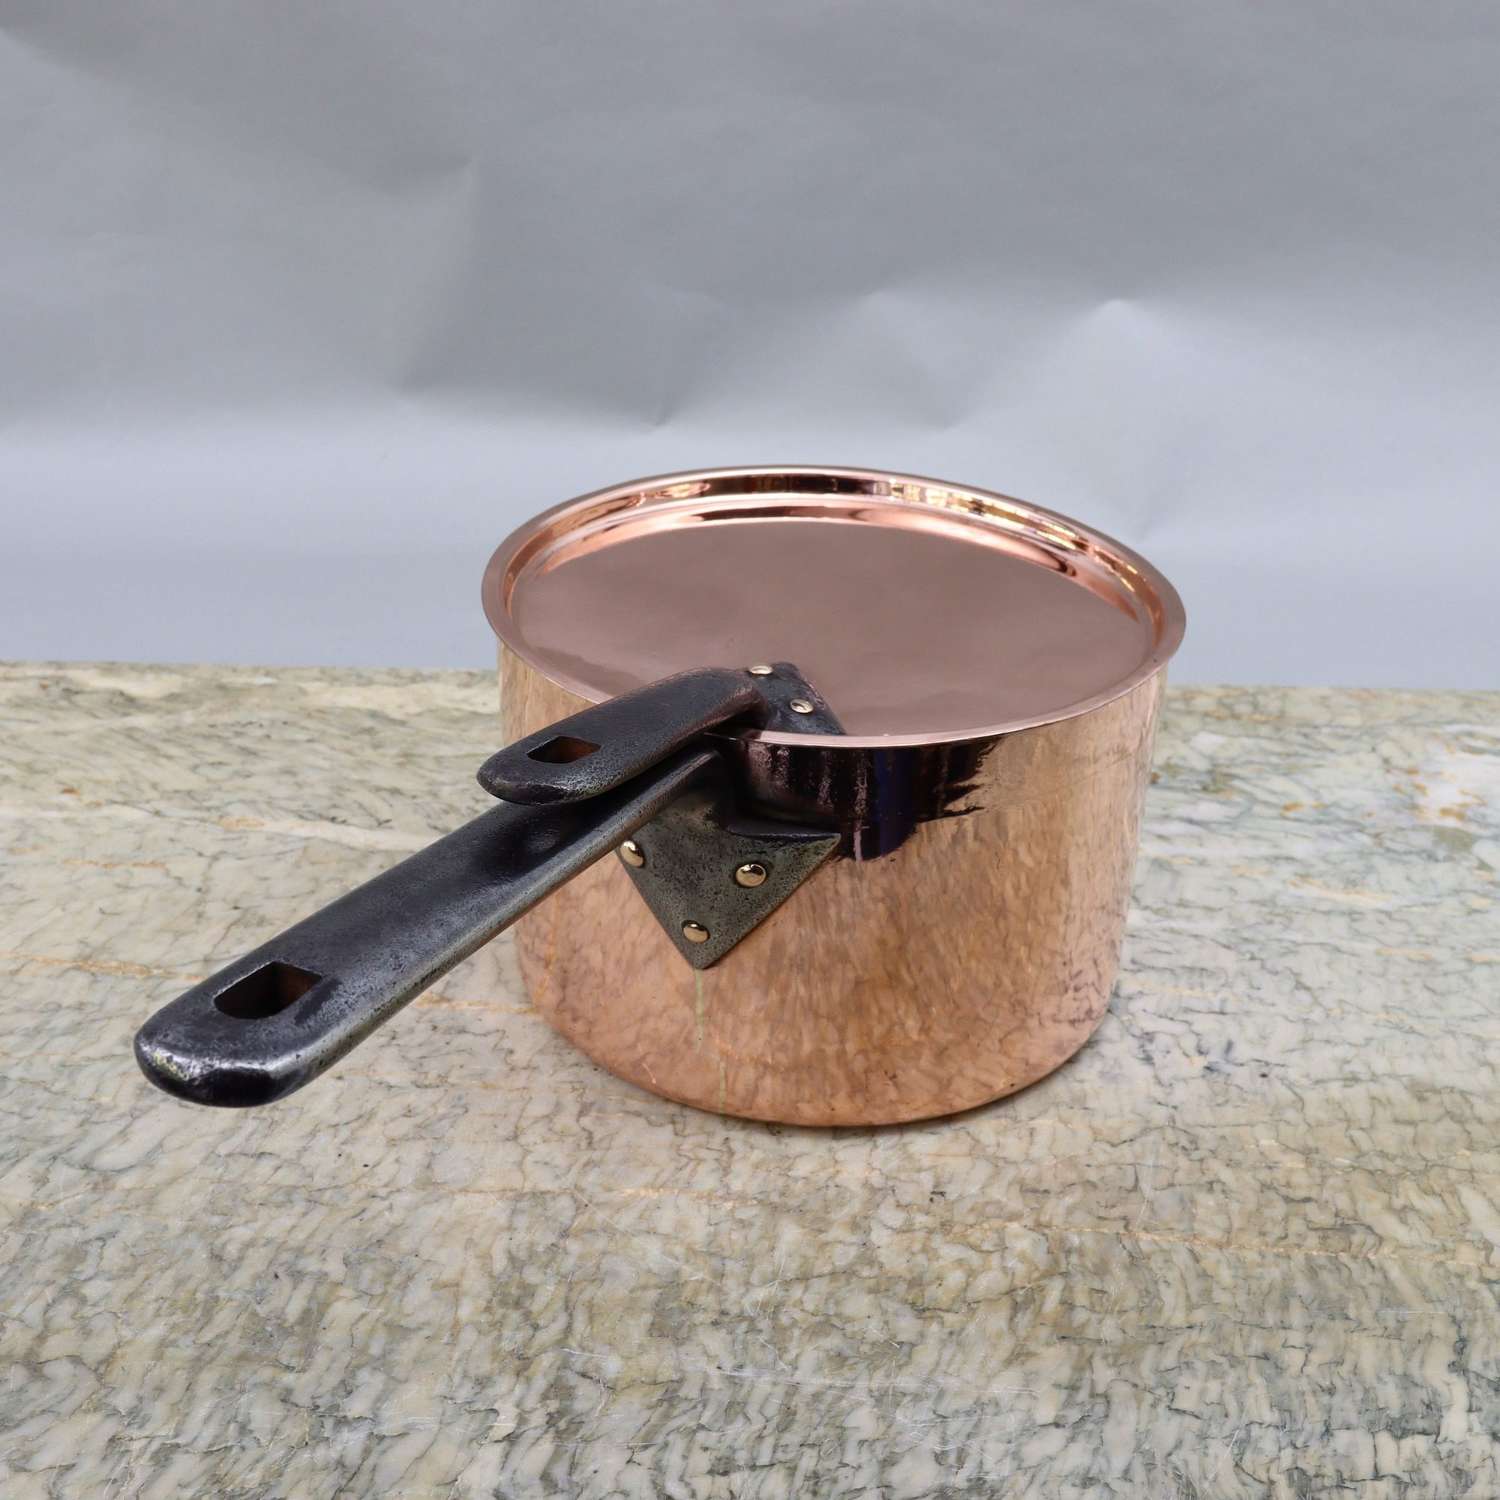 Victorian Copper Saucepan